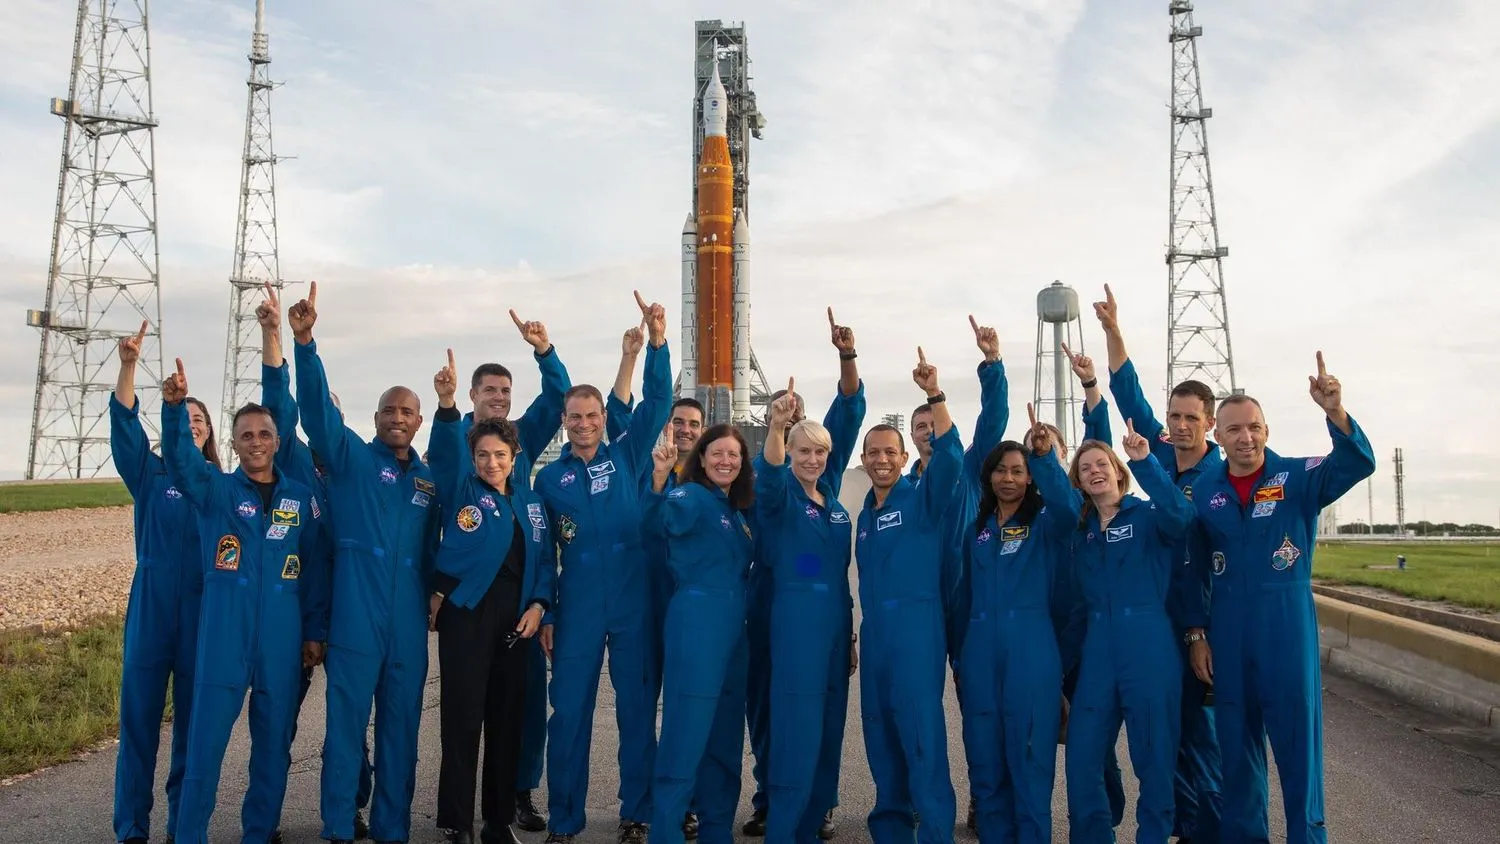 eine Gruppe von Astronauten in Fluganzügen, die vor einer riesigen Rakete stehen und in den Himmel zeigen